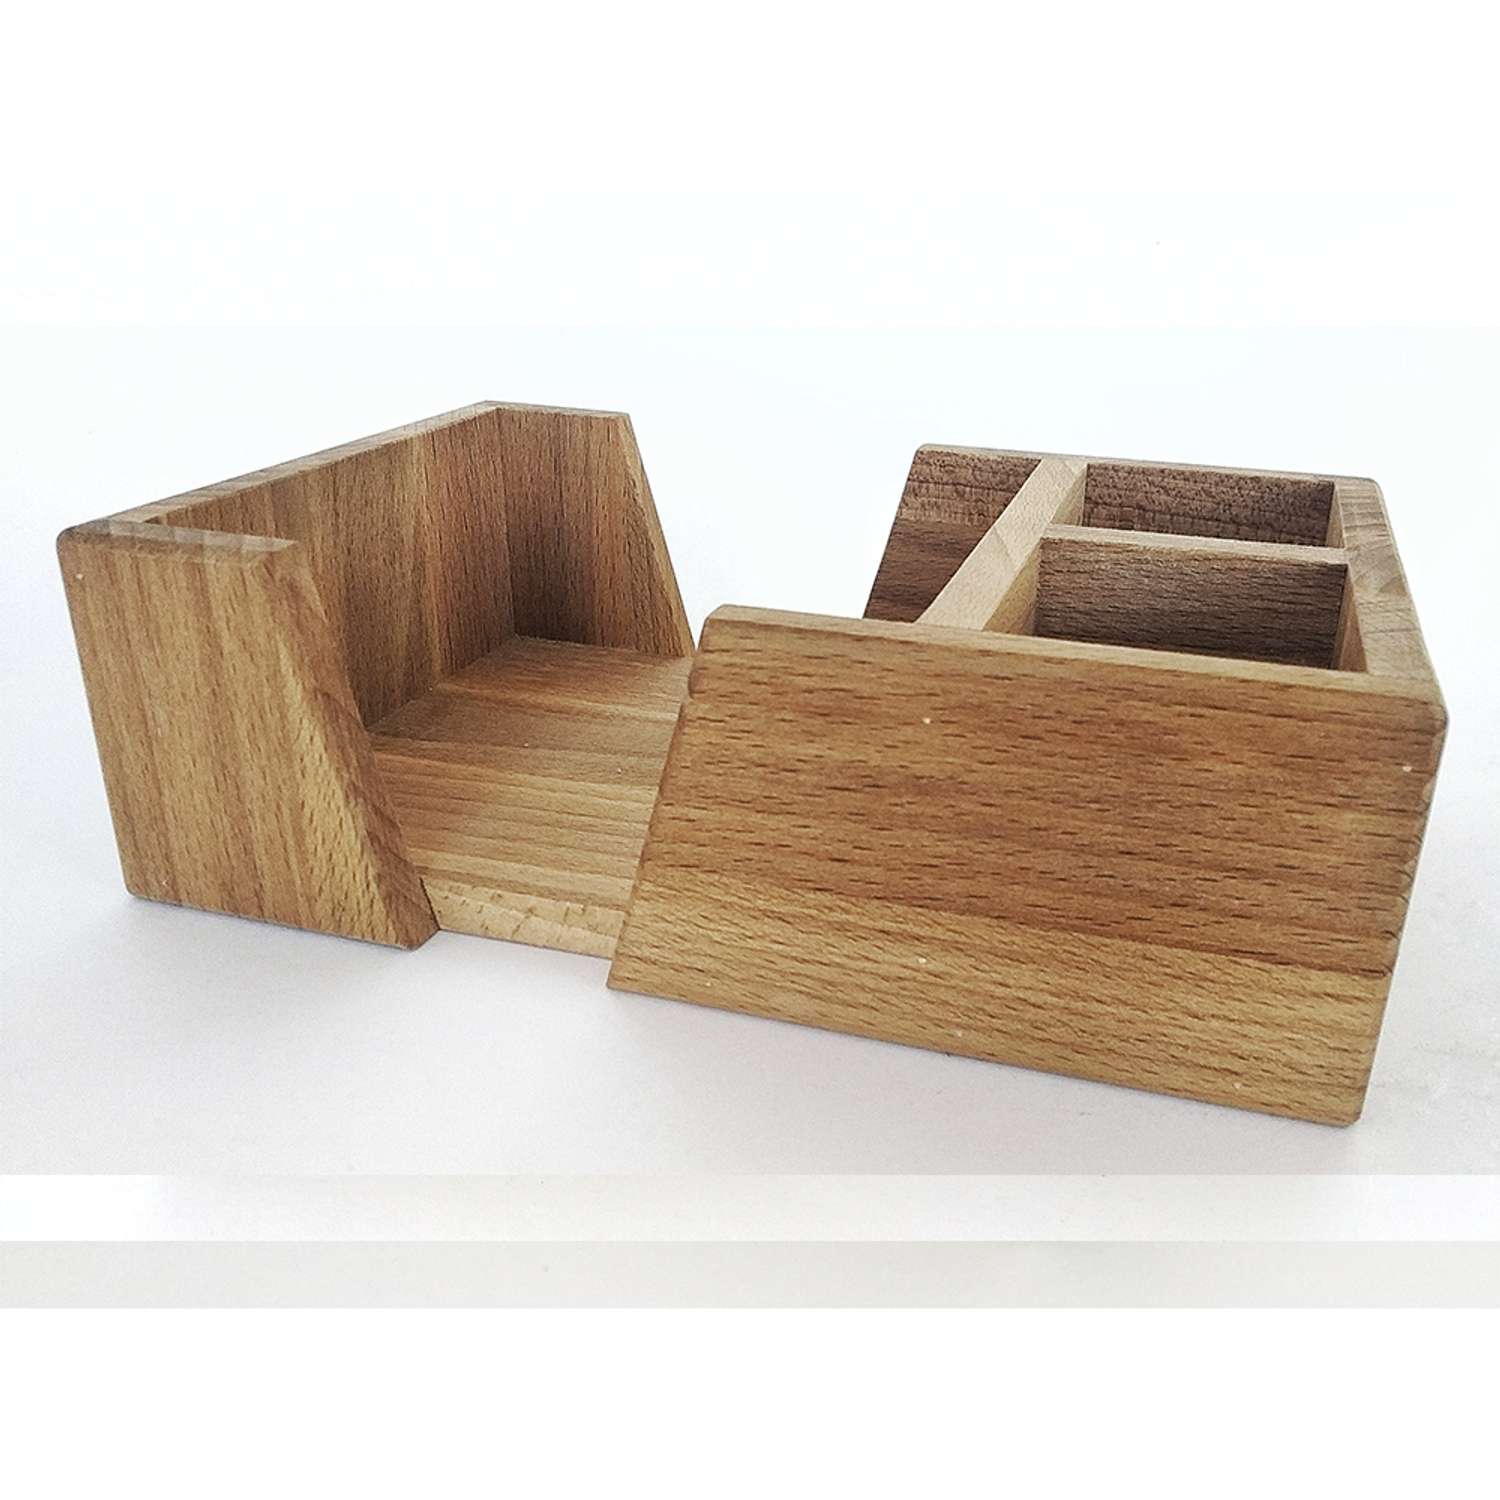 Салфетница-подставка Хозяюшка деревянная кухонная 21.5х14х7 см - фото 1